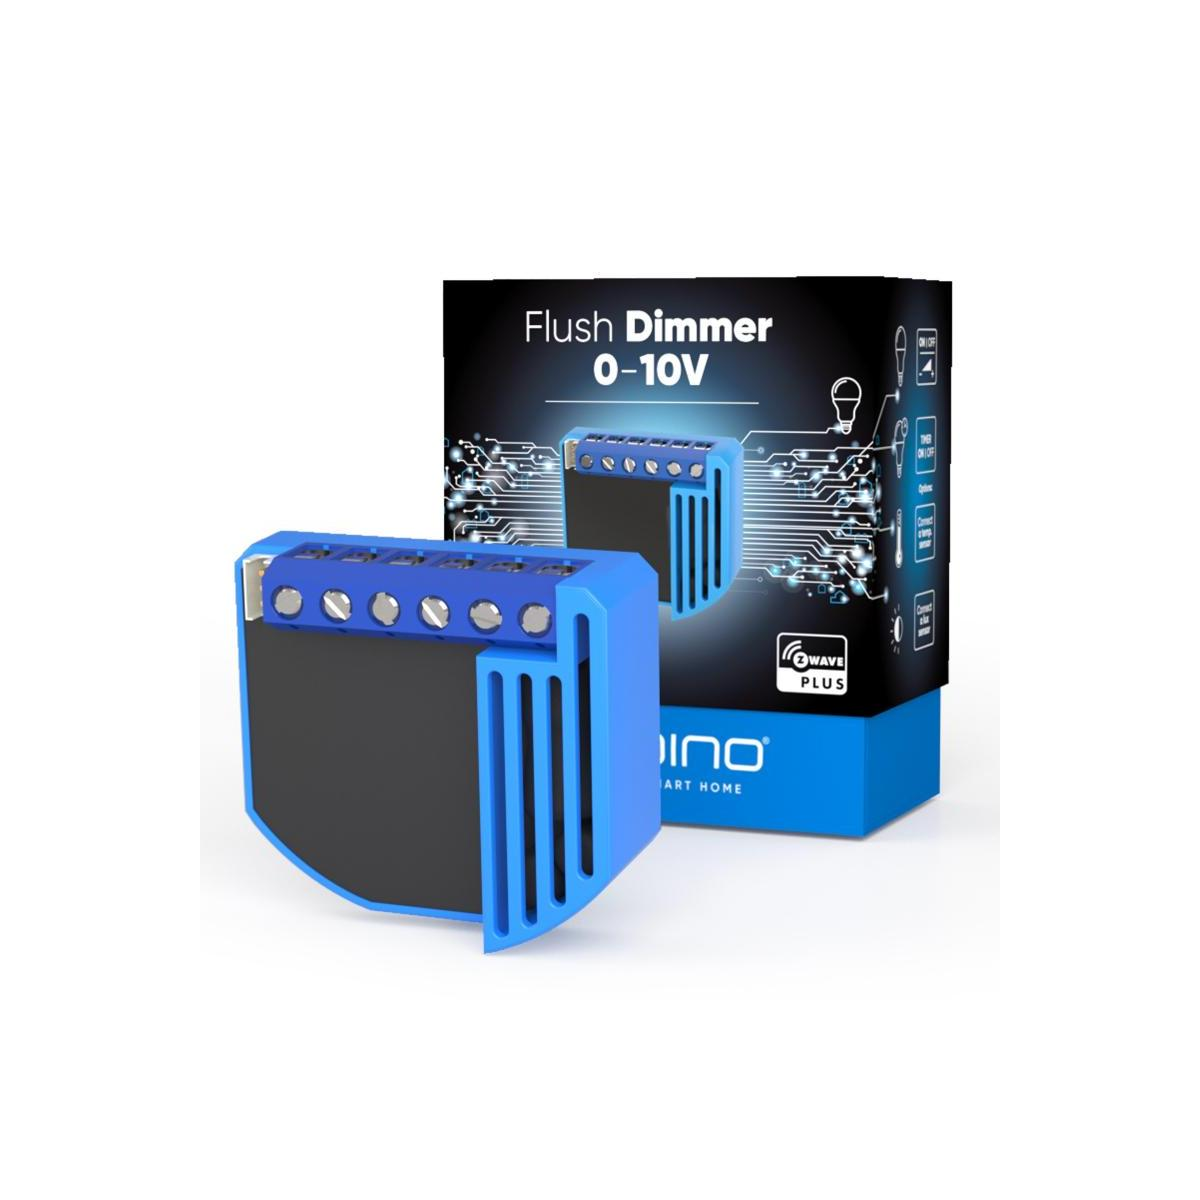 Blau 0-10 Dimmer-Modul ZMNHVD1 V - Z-wave QUBINO Dimmer, Plus